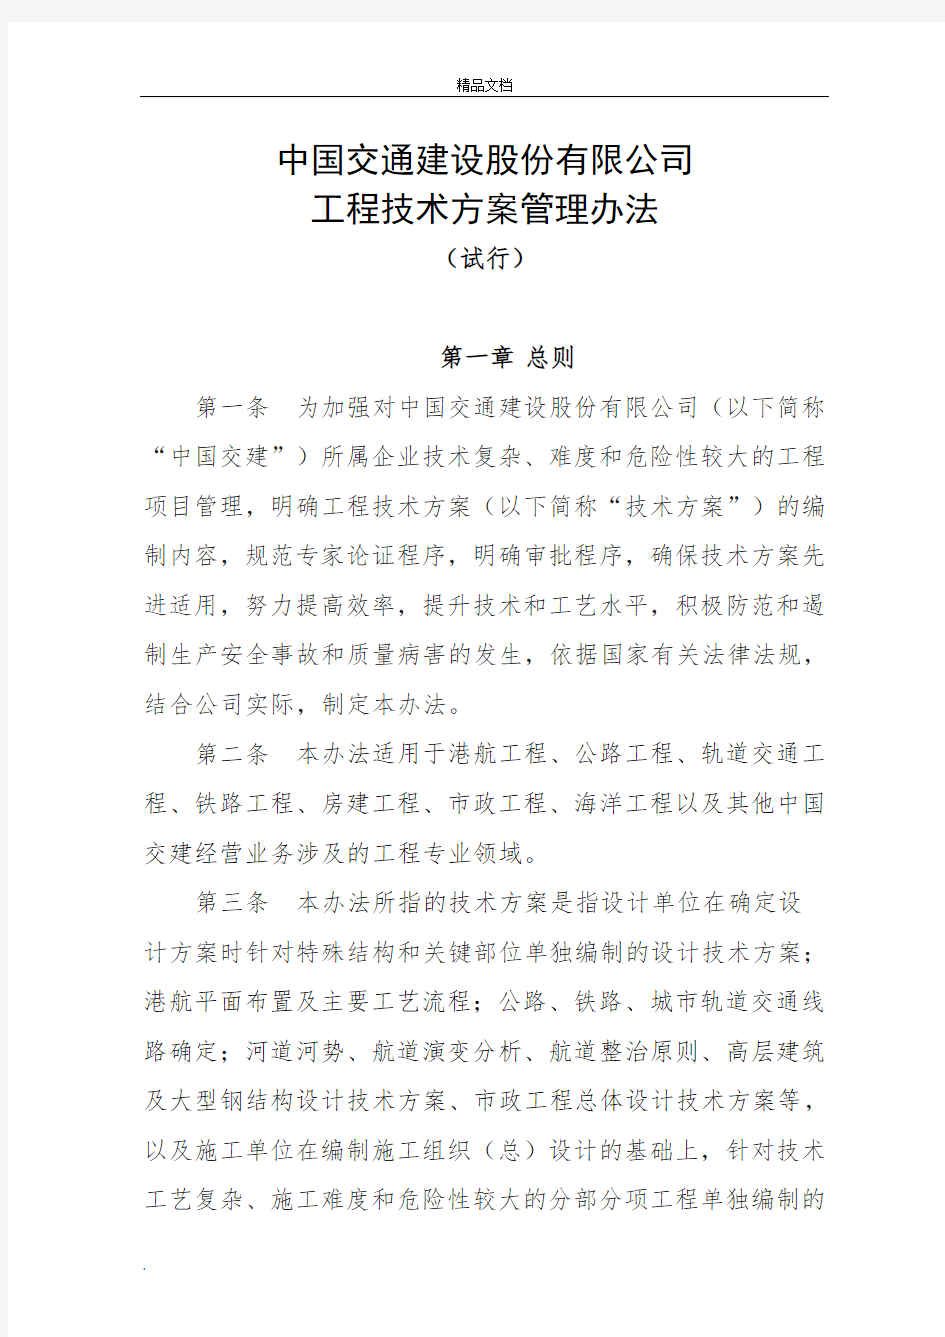 中国交通建设股份有限公司工程技术方案管理办法(试行)